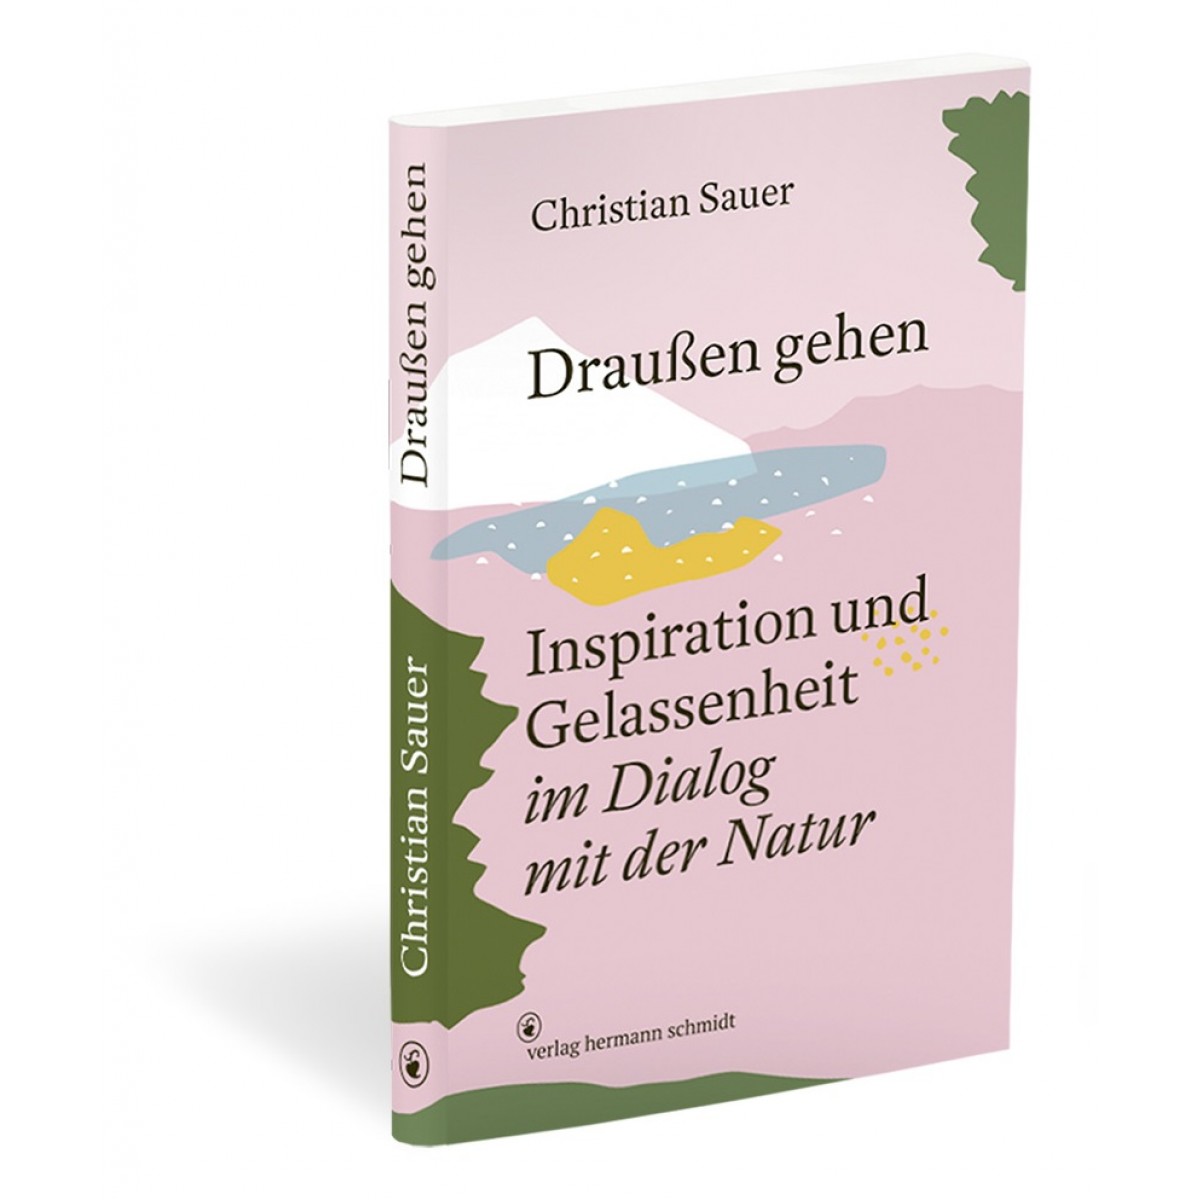 »Draußen gehen – Inspiration und Gelassenheit im Dialog mit der Natur« von Christian Sauer